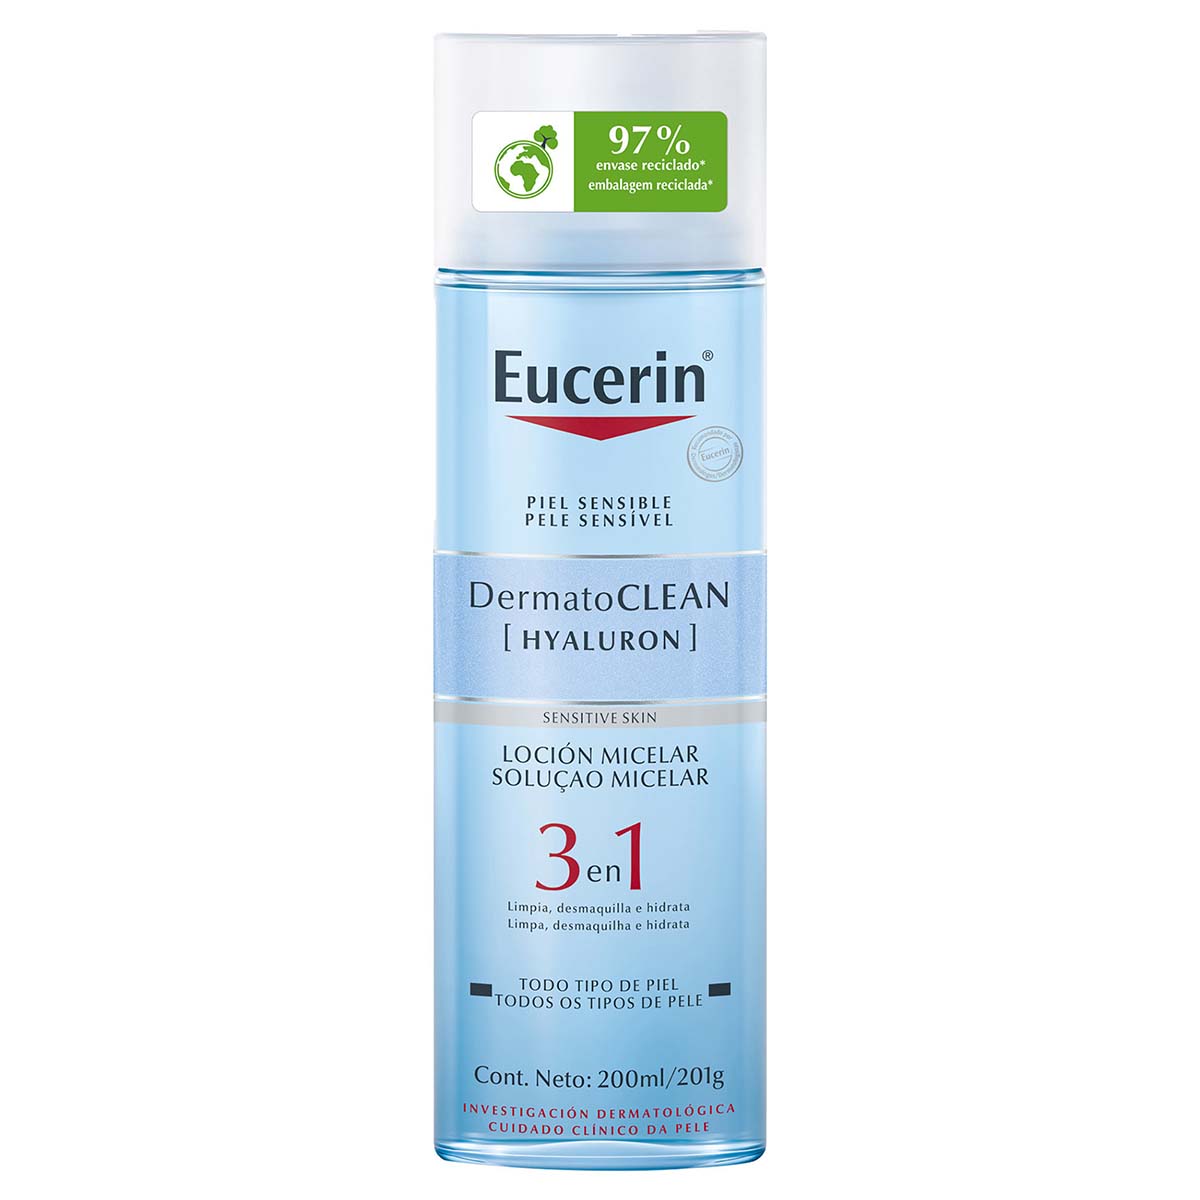 Eucerin dermatoclean loción micelar limpiadora facial 3 en 1 200ml.